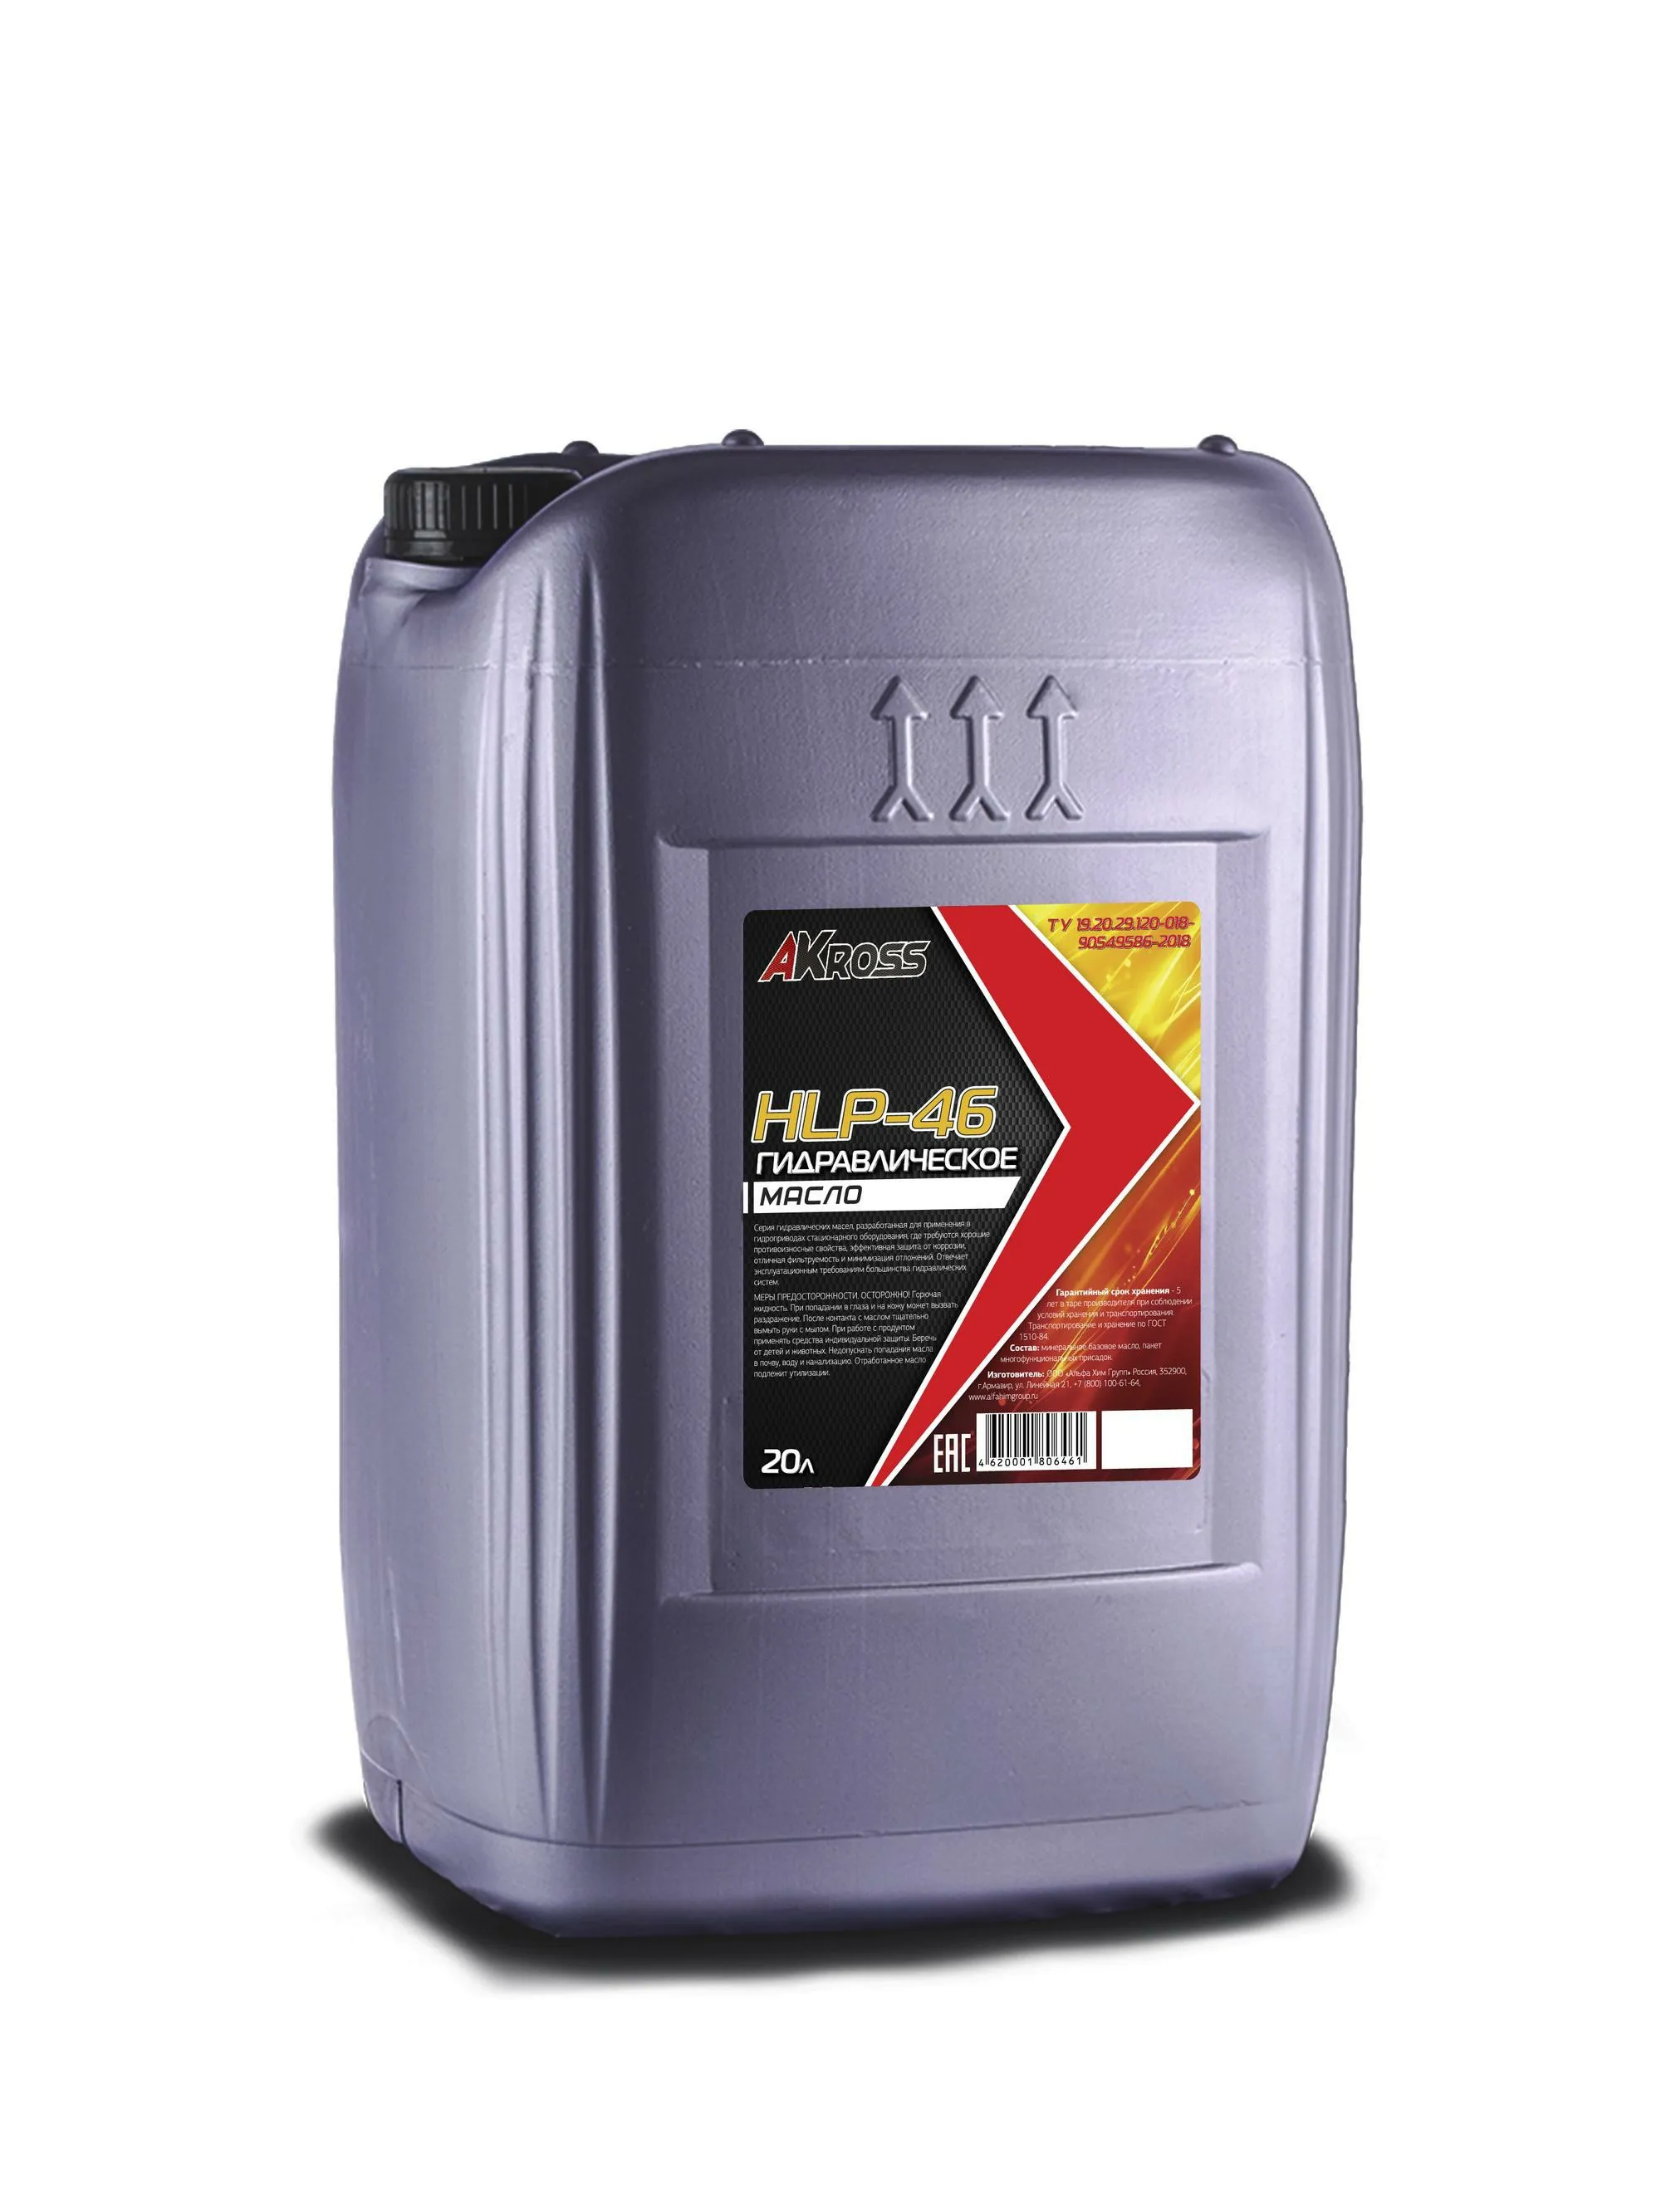 Гидравлическое масло 20кг HLP-46#1